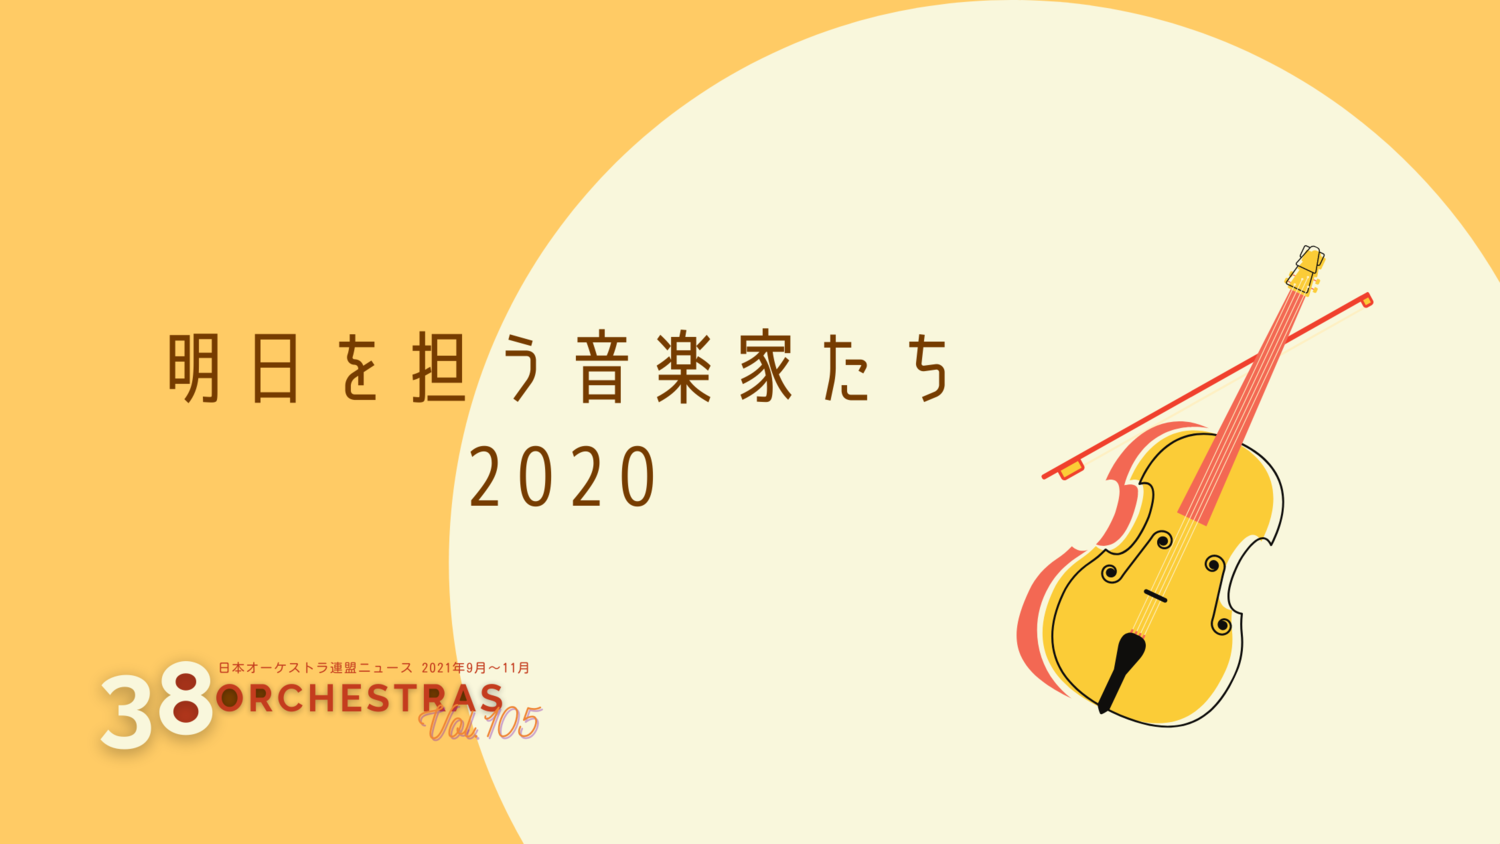  明日を担う音楽家たち2020   2020年12月7日　東京オペラシティコンサートホール | オケ連ニュース | 公益社団法人 日本オーケストラ連盟